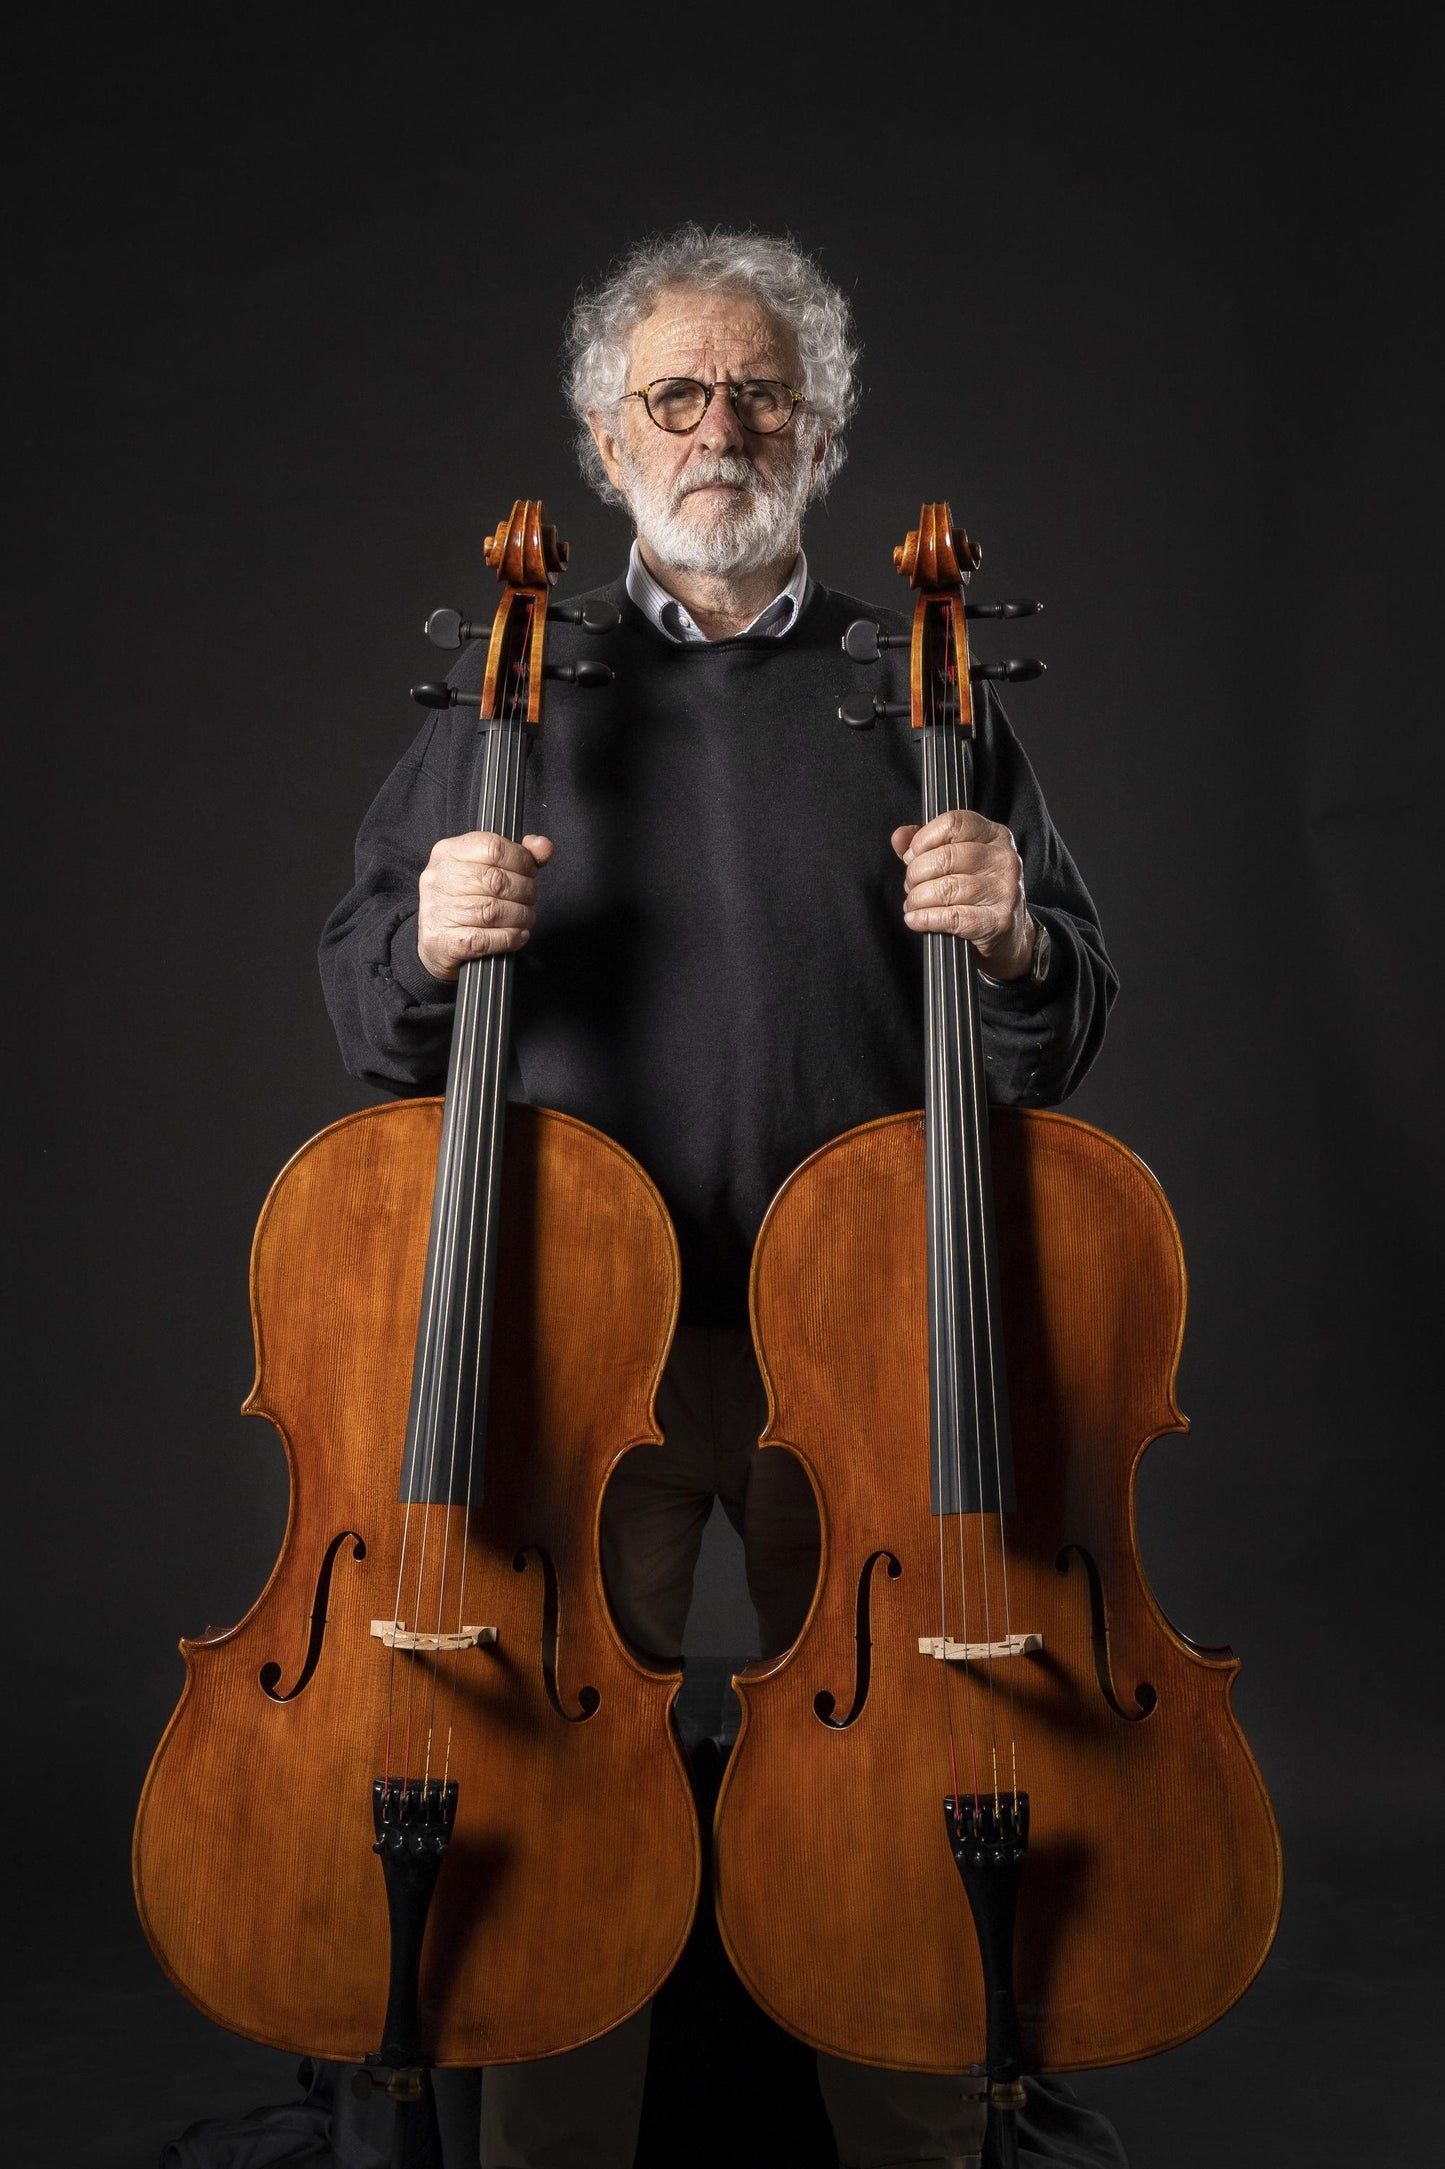 Vettori Paolo Cello Mod. Guadagnini "Masolino" 2021